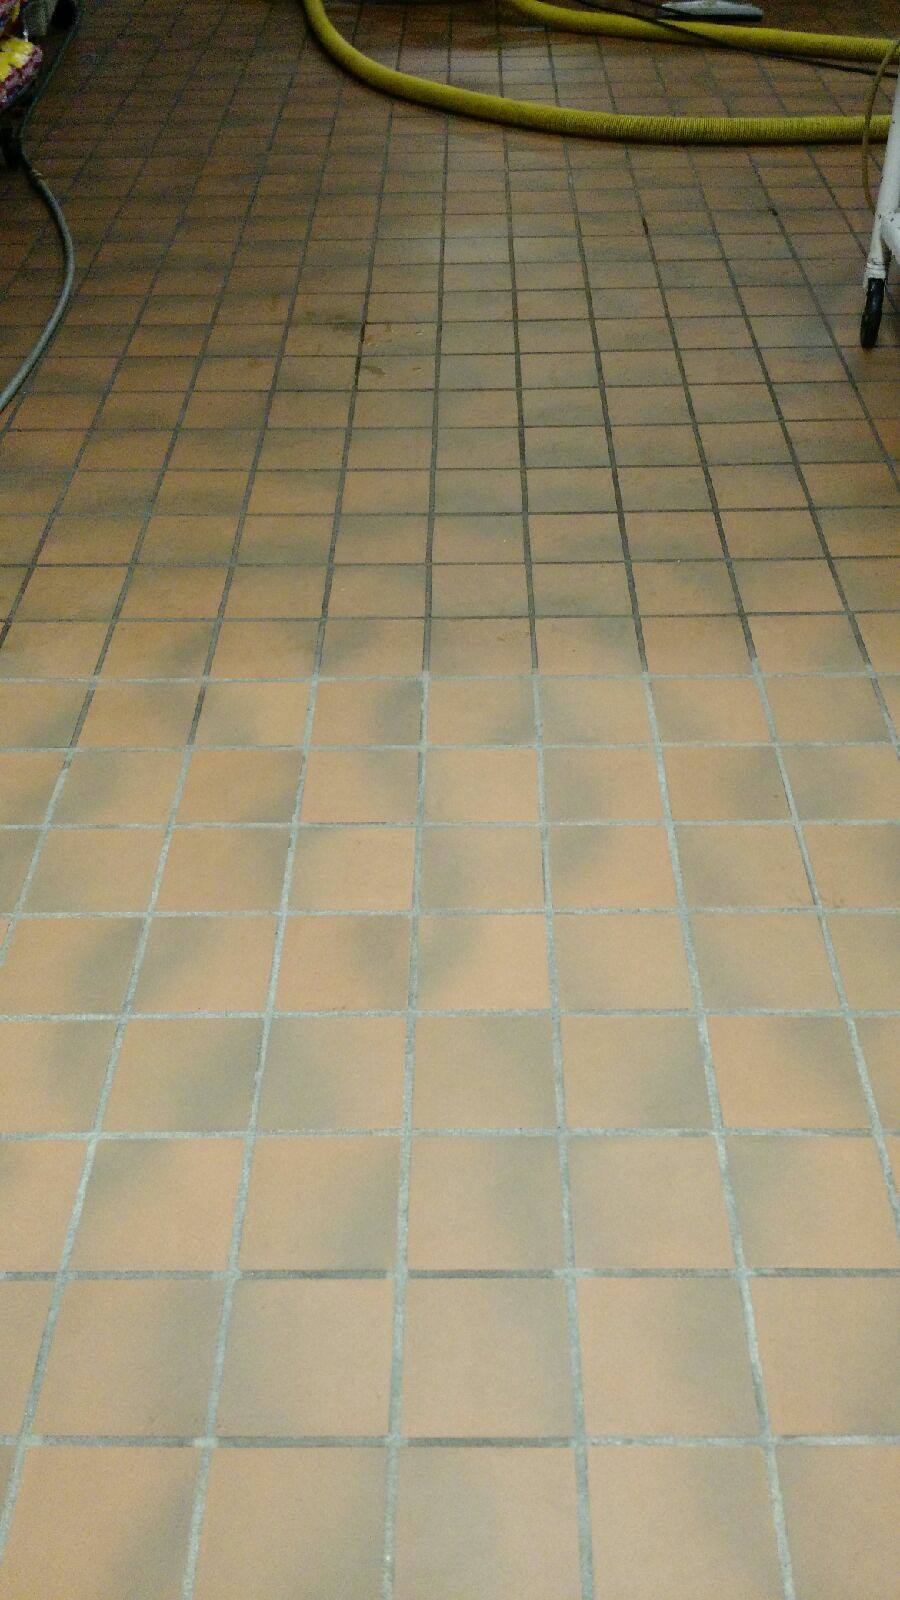 Industrial kitchen tile floor cleaning in Quincy